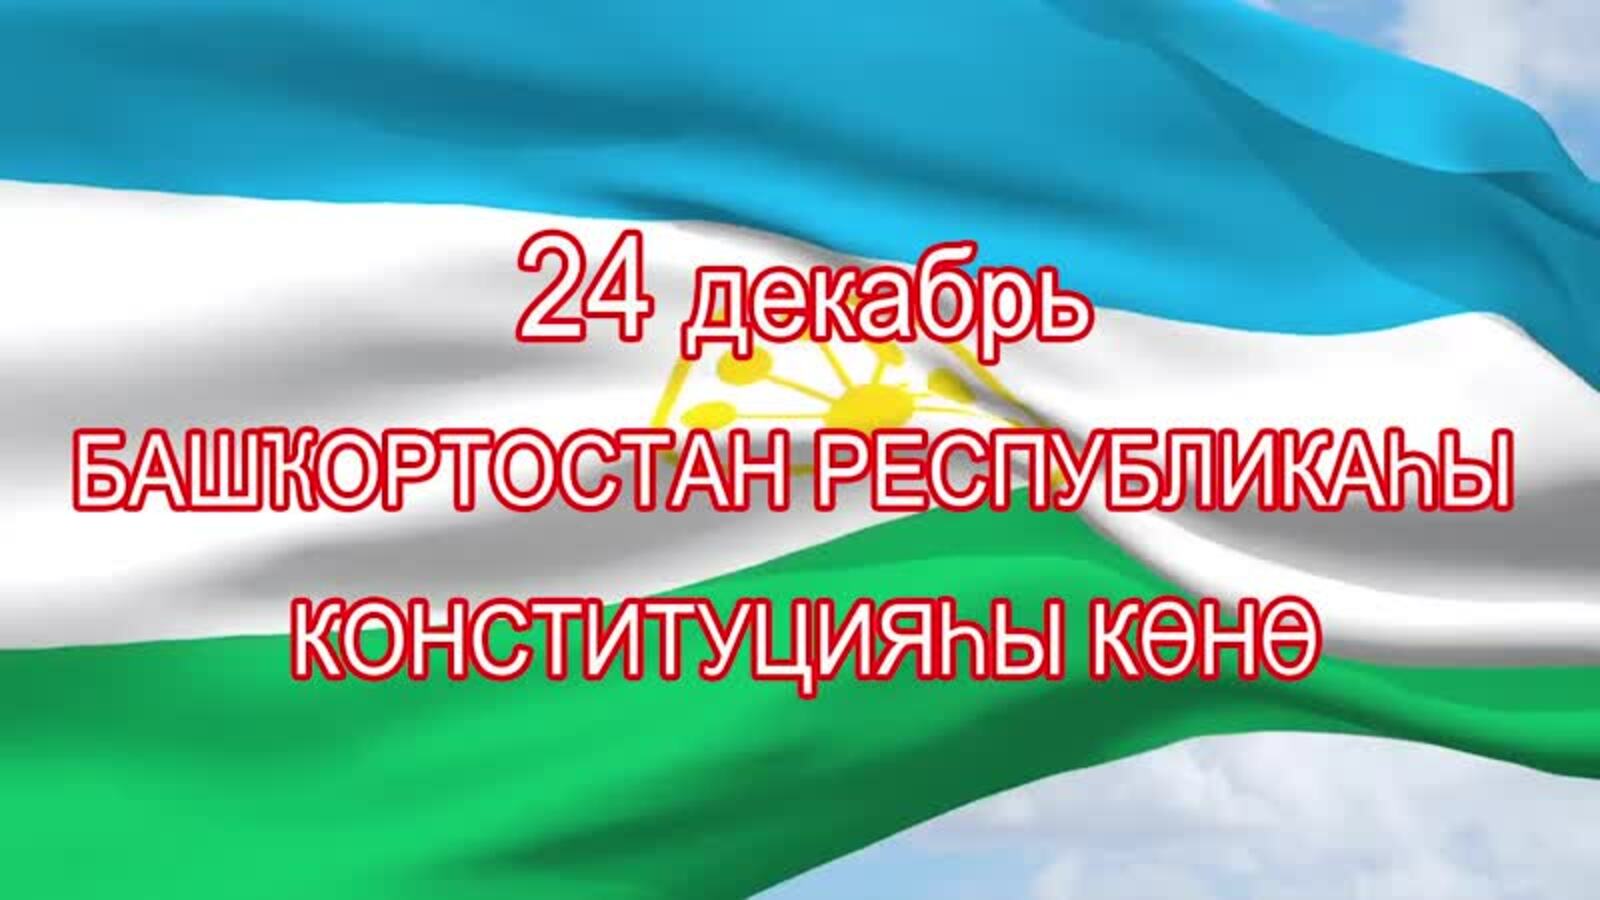 24 декабрь -  Башҡортостан Республикаһы Конституцияһы көнө